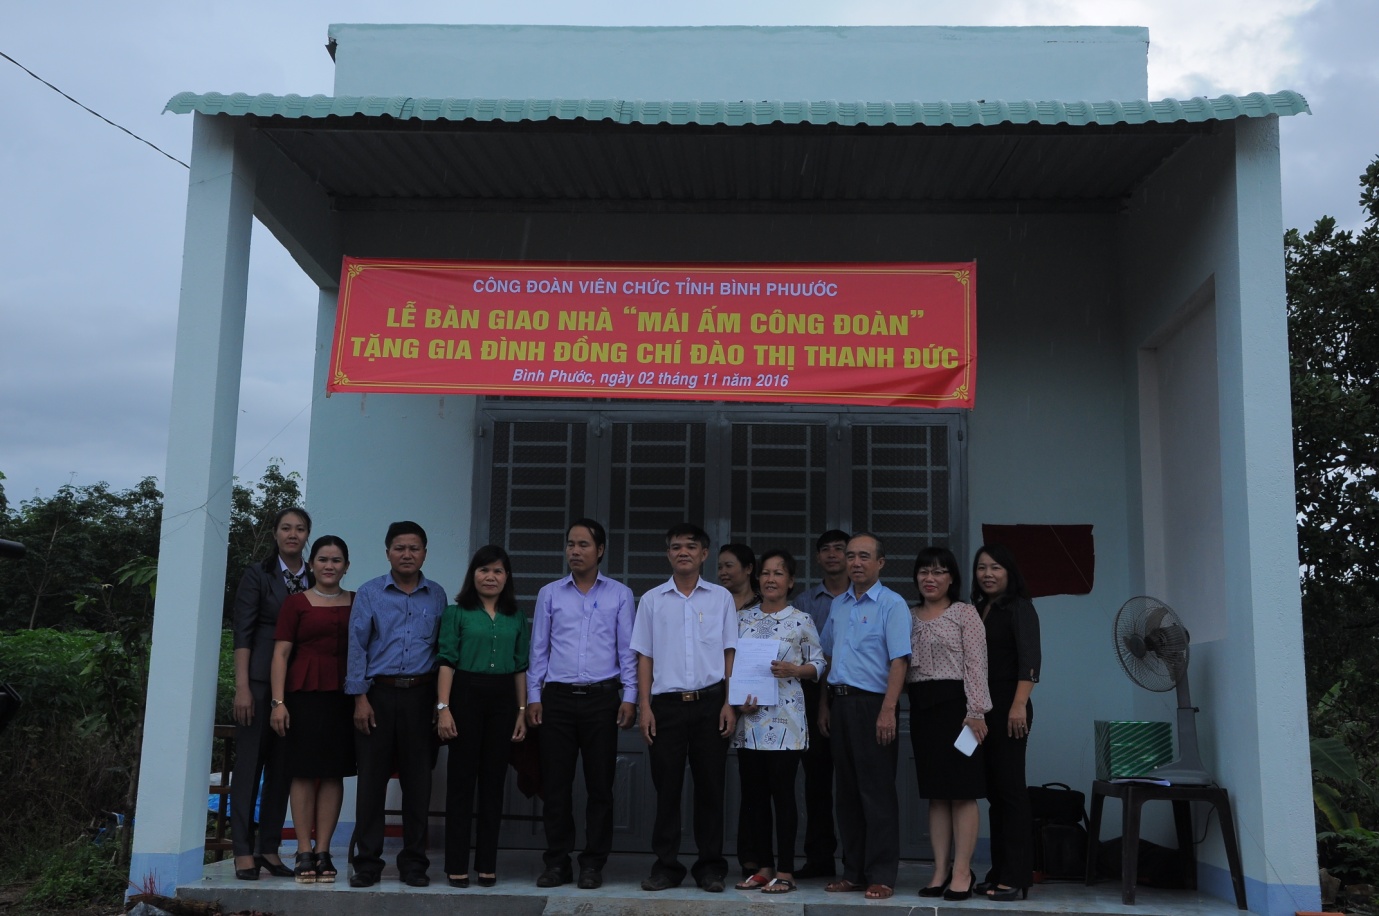 CĐVC tỉnh Bình Phước tổ chức bàn giao nhà “Mái ấm Công đoàn”